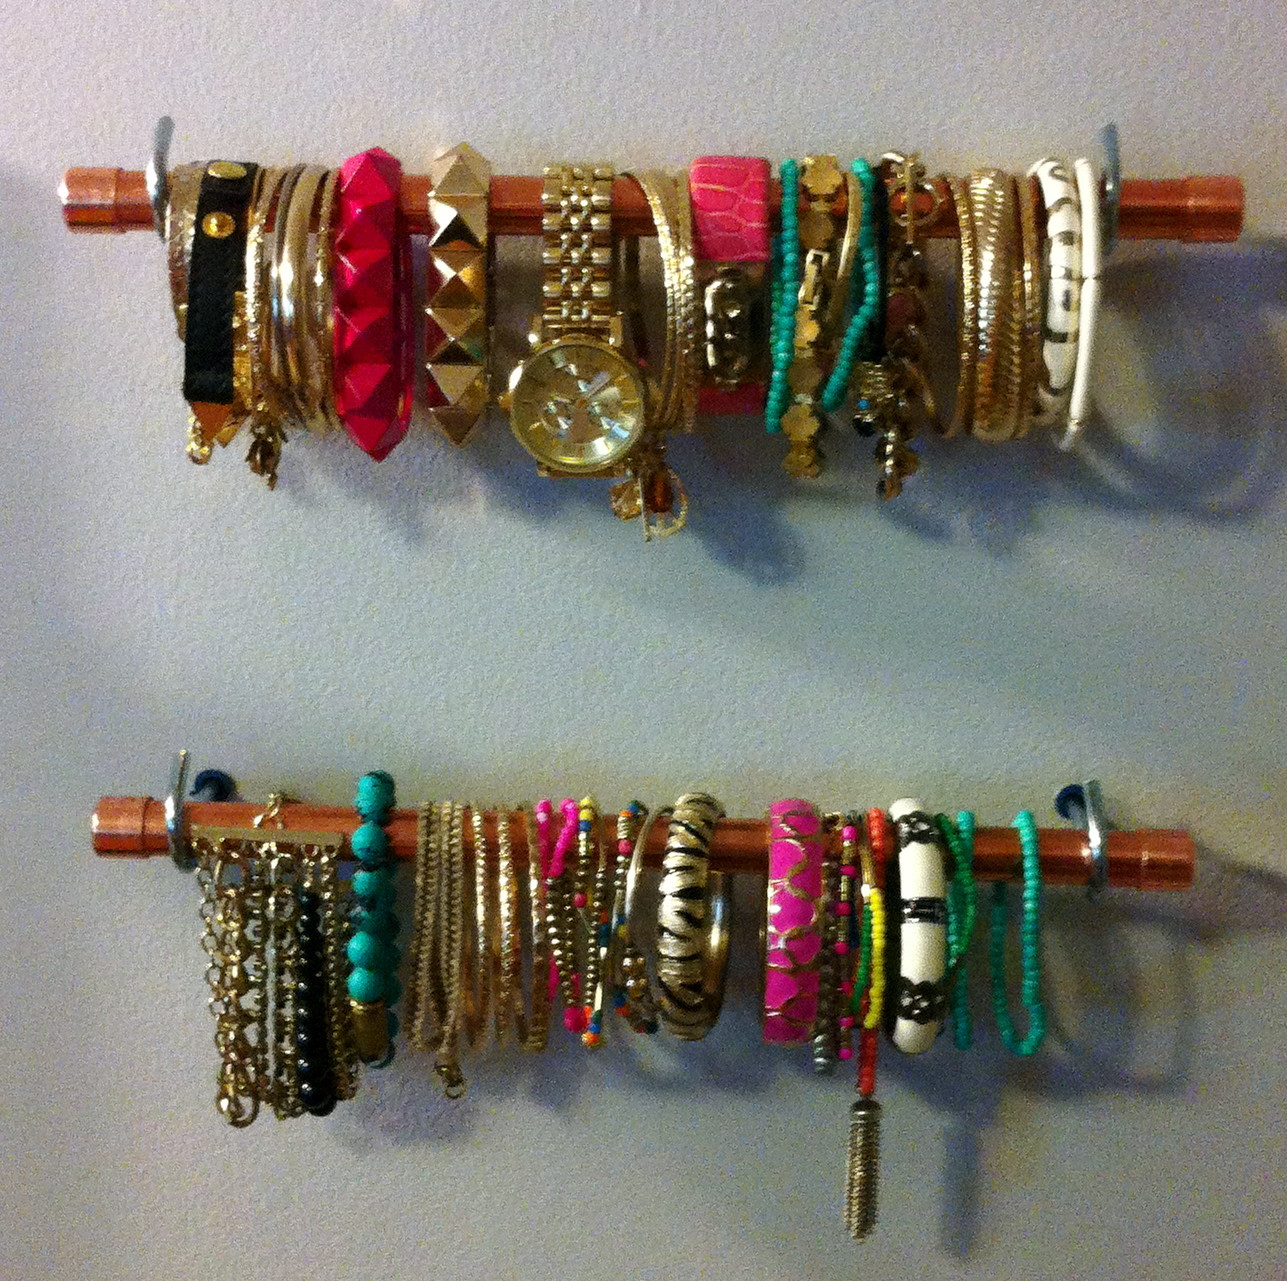 Bracelet Organizer DIY
 DIY Jewelry Display